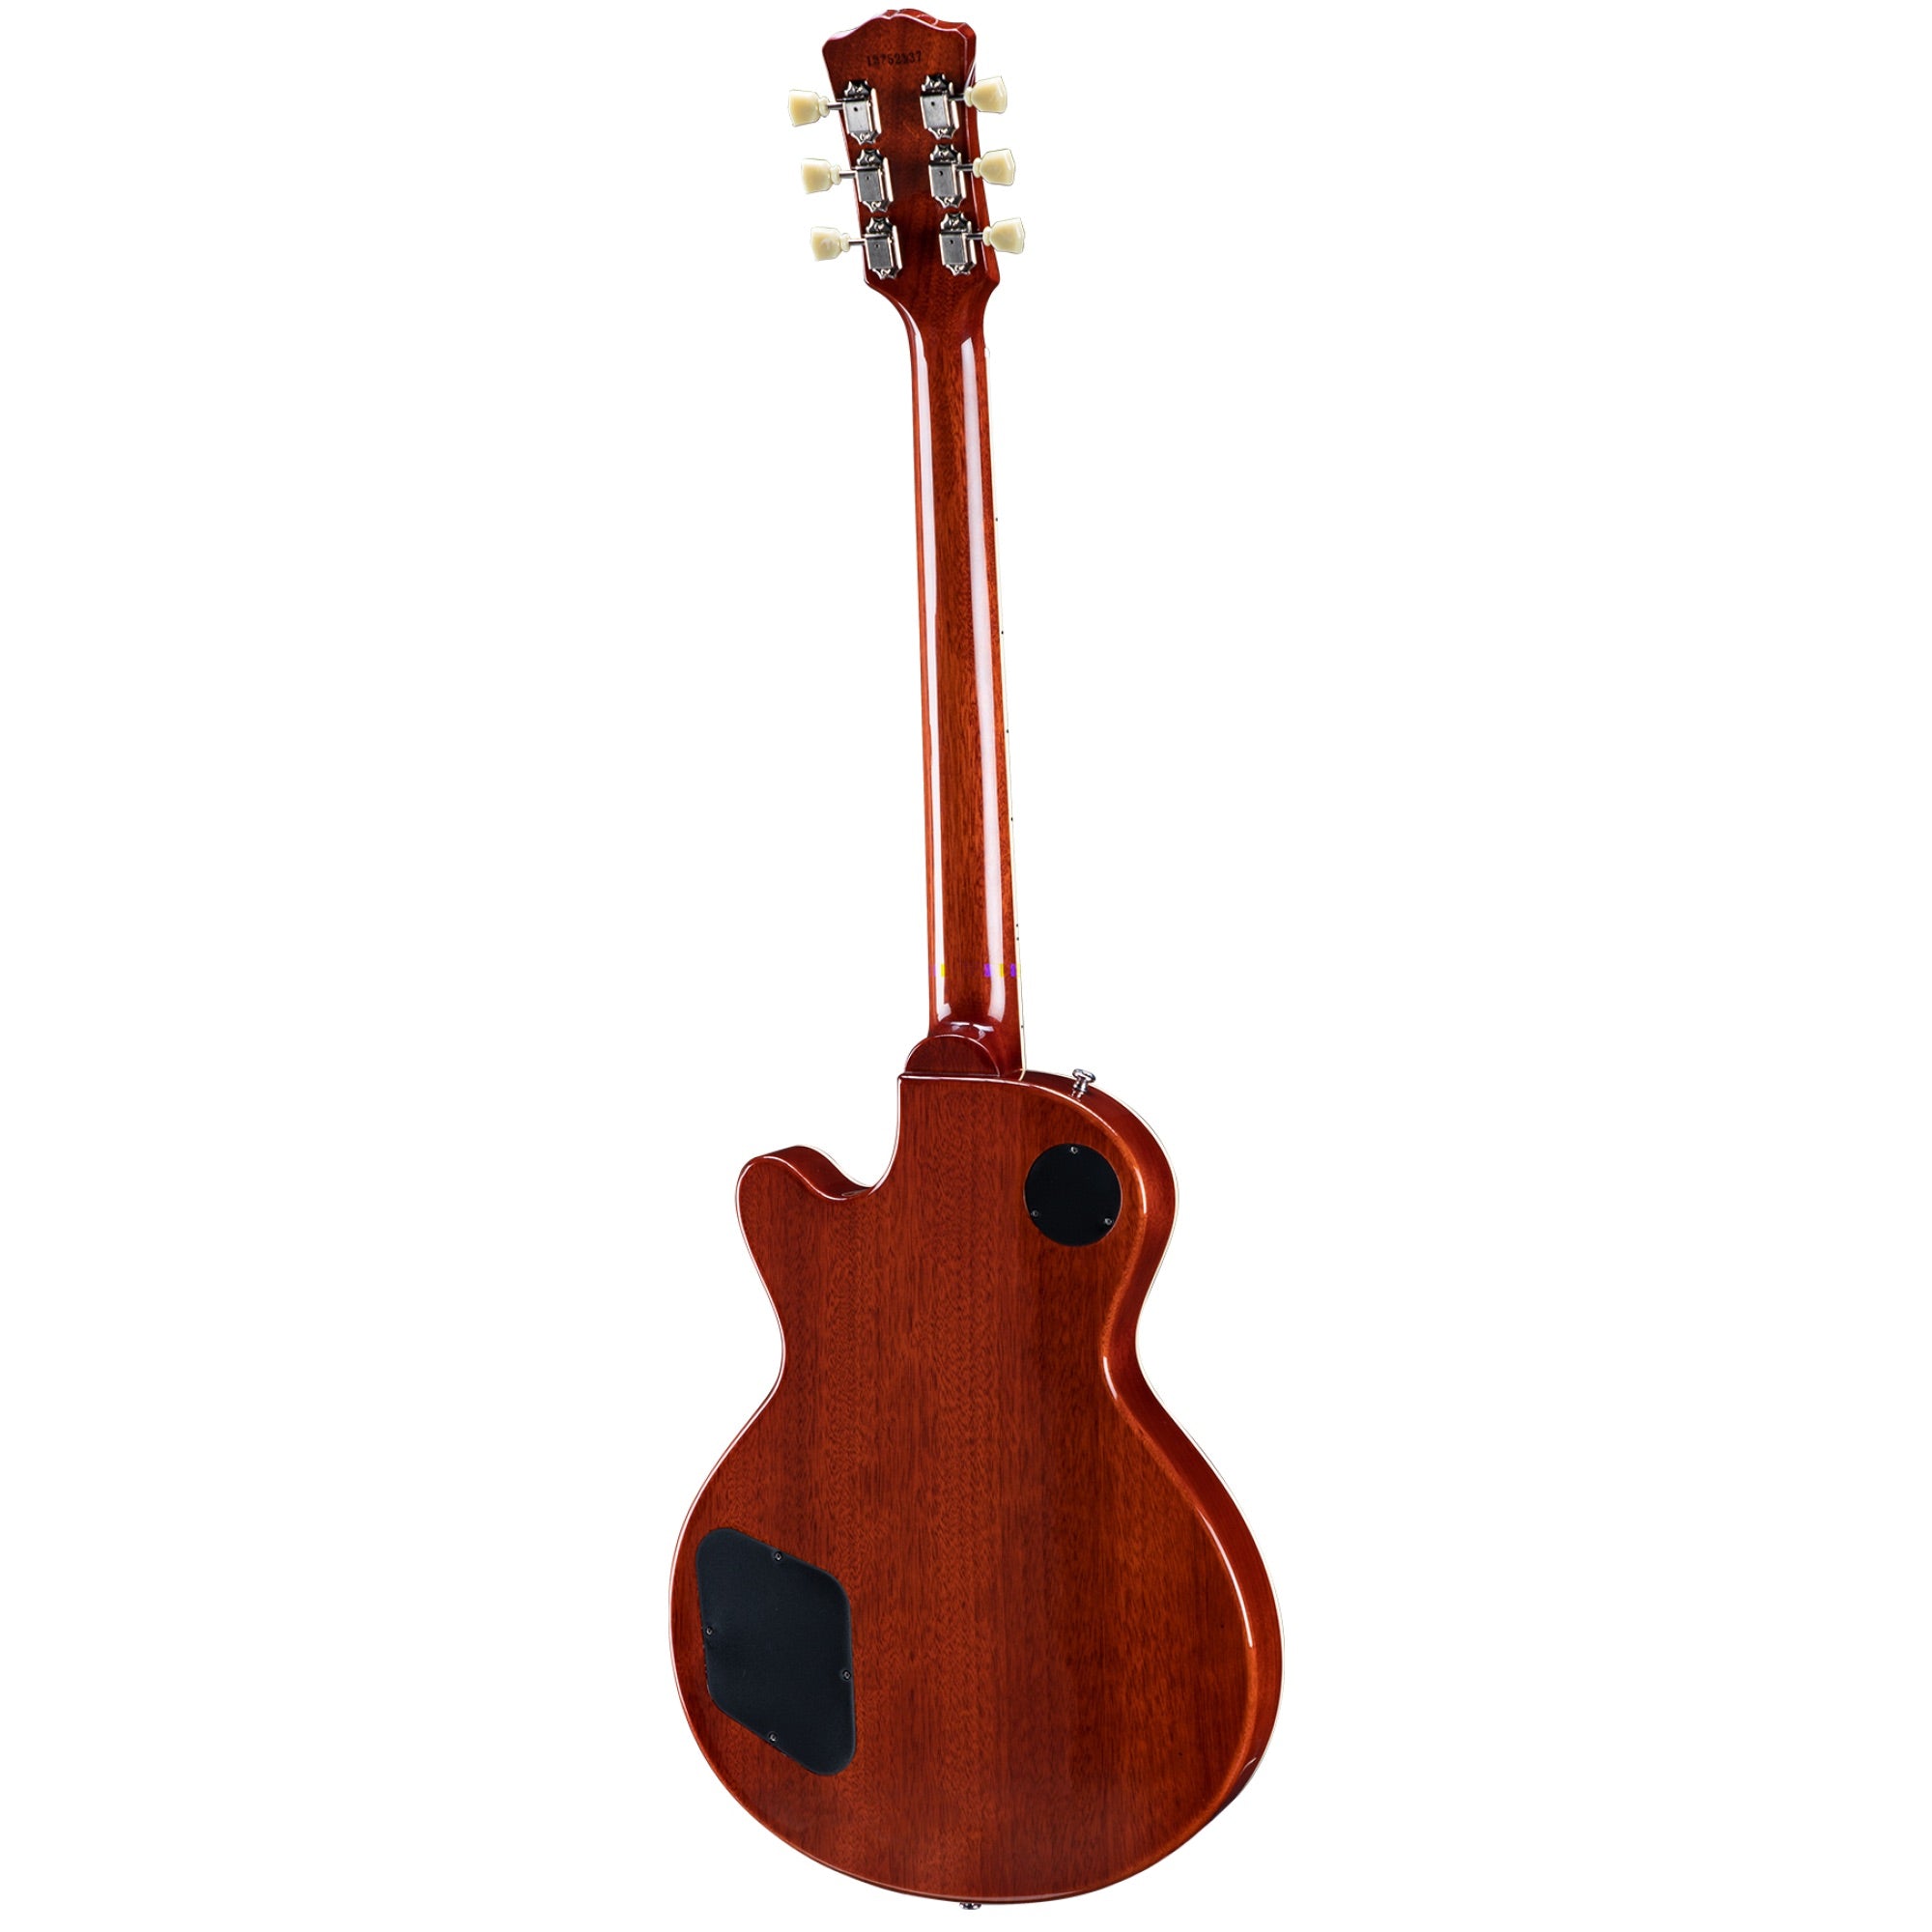 Eastman SB59/V Solid Body Electric Guitar in Antique Redburst incl Hard Case